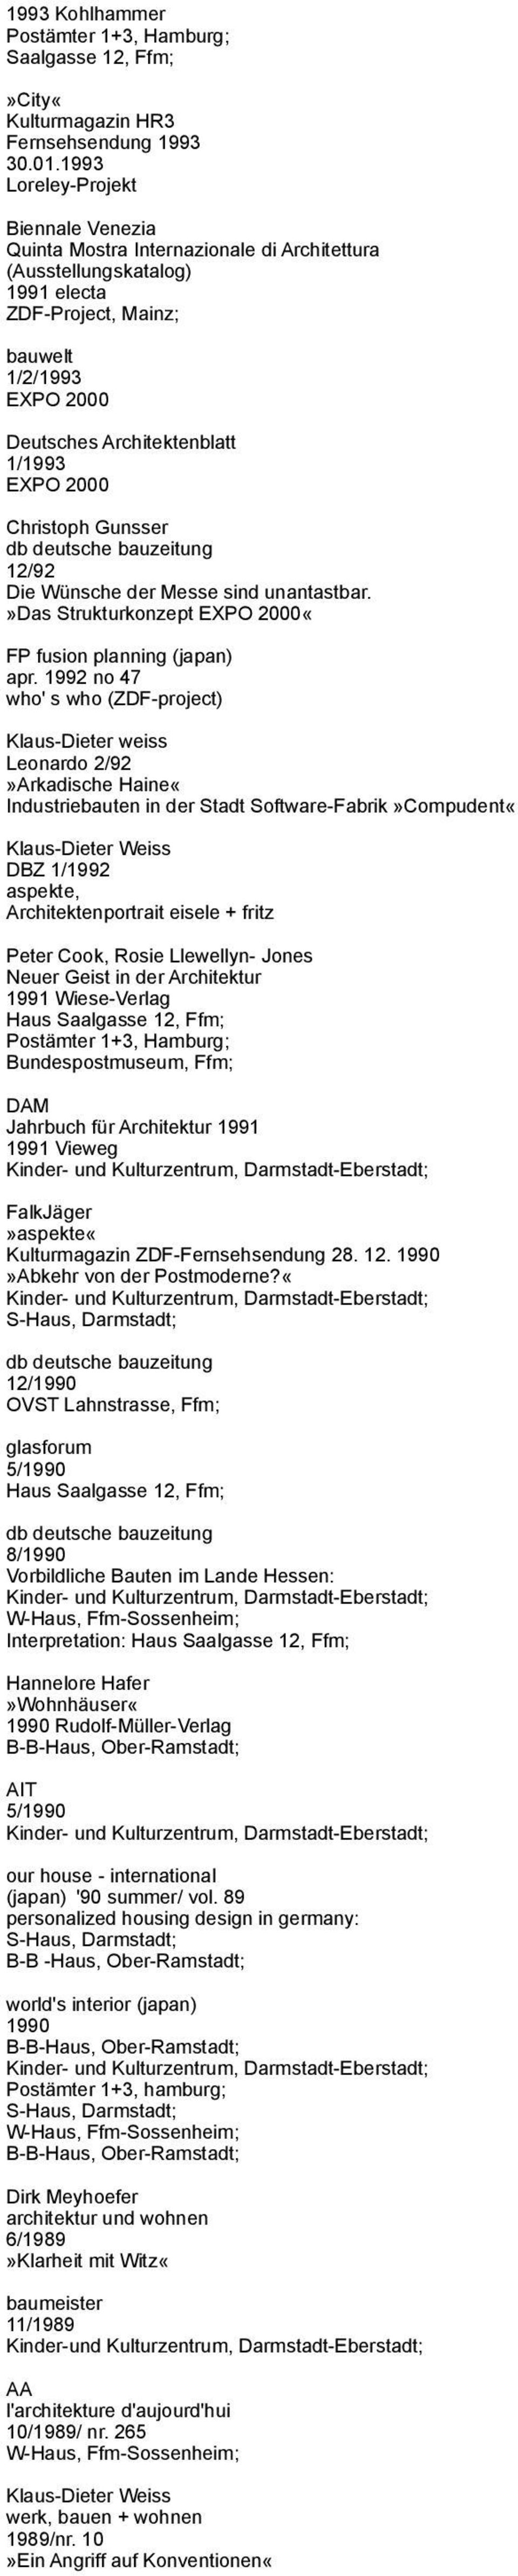 Christoph Gunsser db deutsche bauzeitung 12/92 Die Wünsche der Messe sind unantastbar.»das Strukturkonzept EXPO 2000«FP fusion planning (japan) apr.